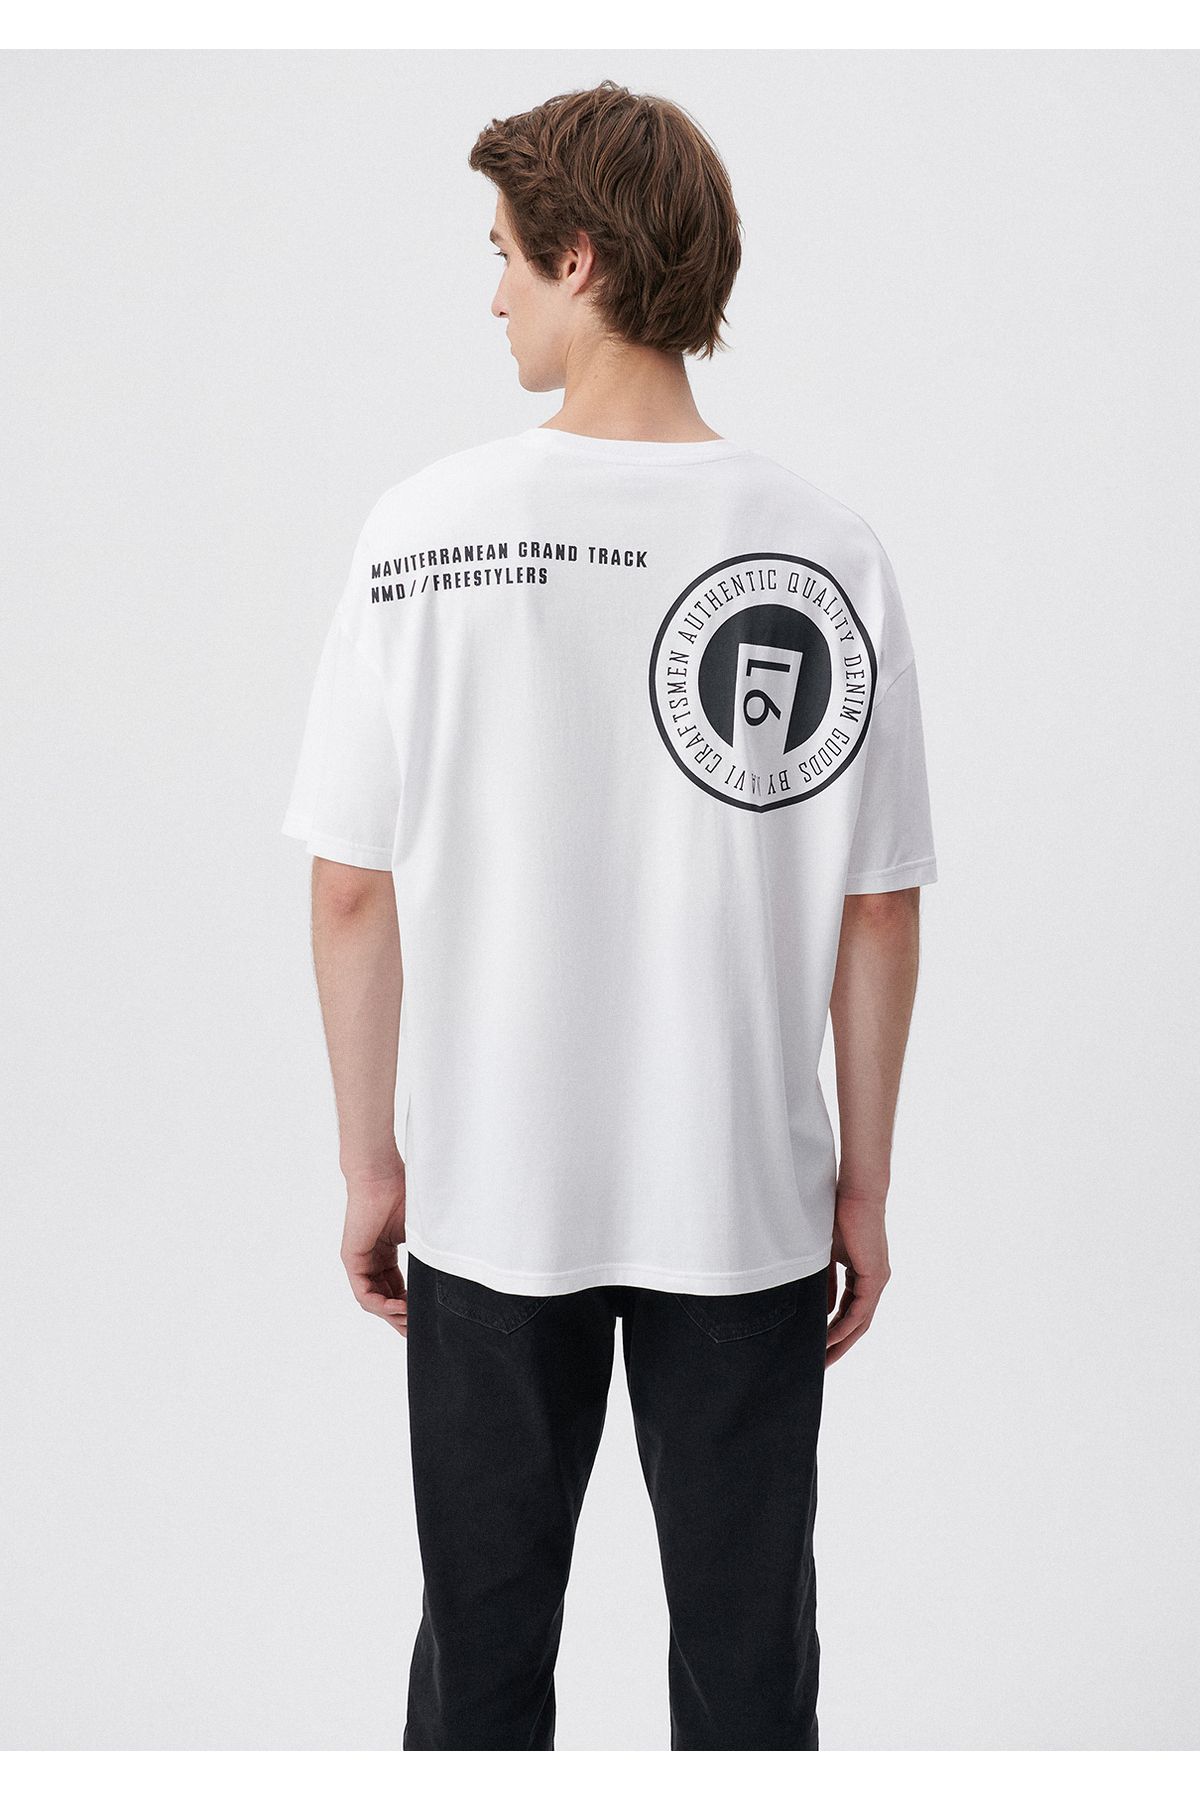 Mavi Ride روی تی شرت سفید چاپ شده بزرگ / بخش گسترده ای 0611633-620